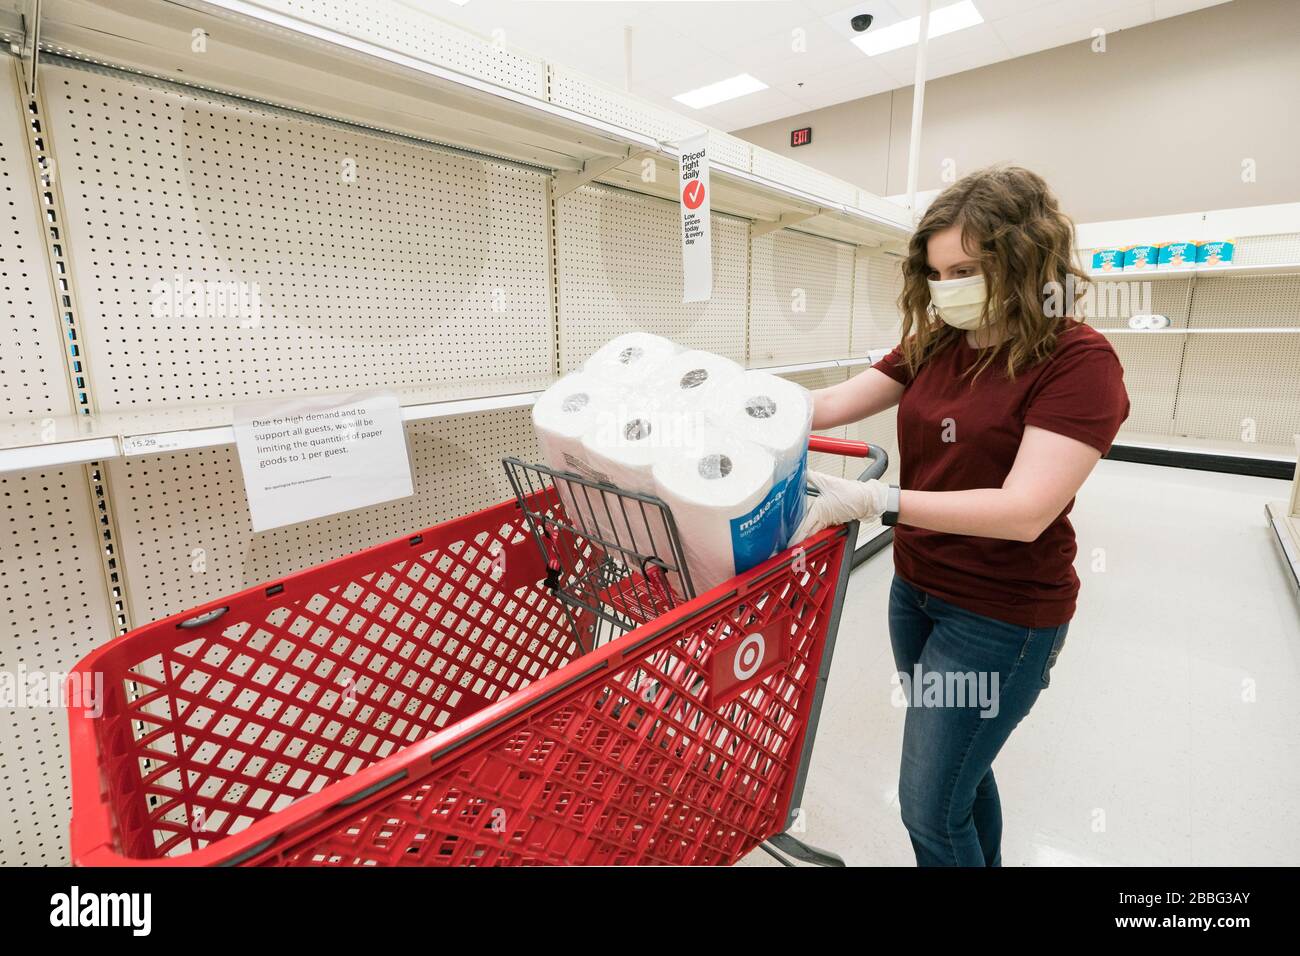 Indiana, USA - 24. März 2020: Eine blonde Frau, die eine Gesichtsmaske und Handschuhe trägt, legt ein Paket von Papiertüchern in ihren Warenkorb inmitten leerer Regale Stockfoto